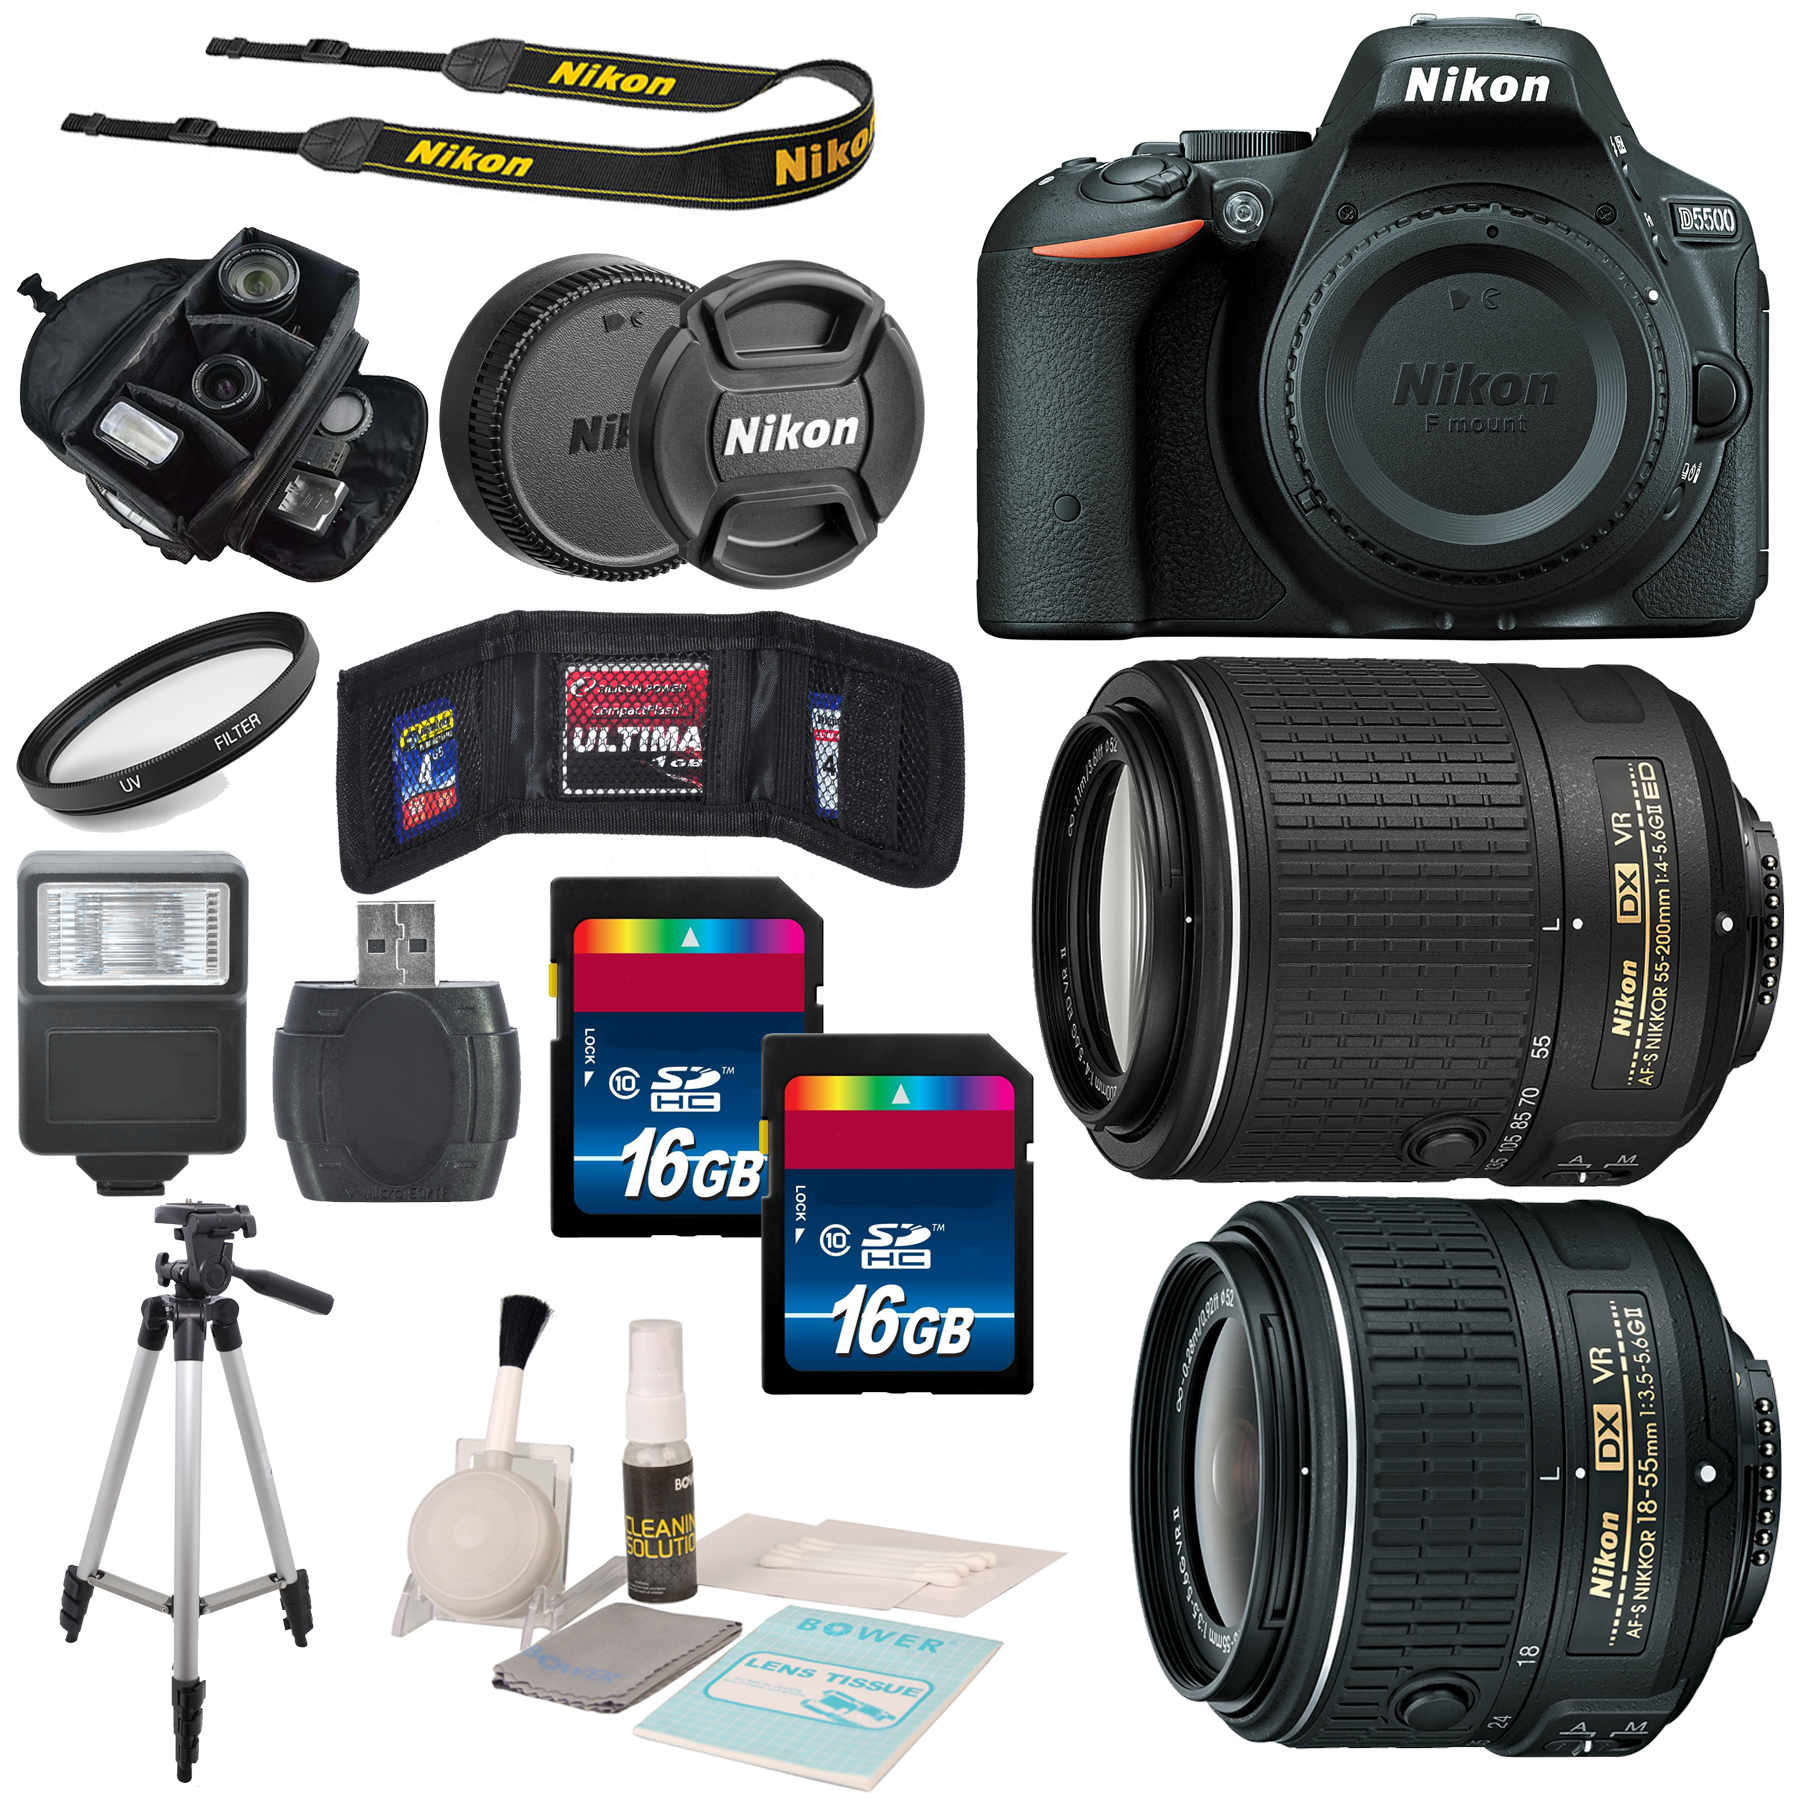 Nikon D5500 Dx 18 55mm F 3 5 5 6g Vr Ii With 55 0mm Lens Bundle Dslr5500kit2